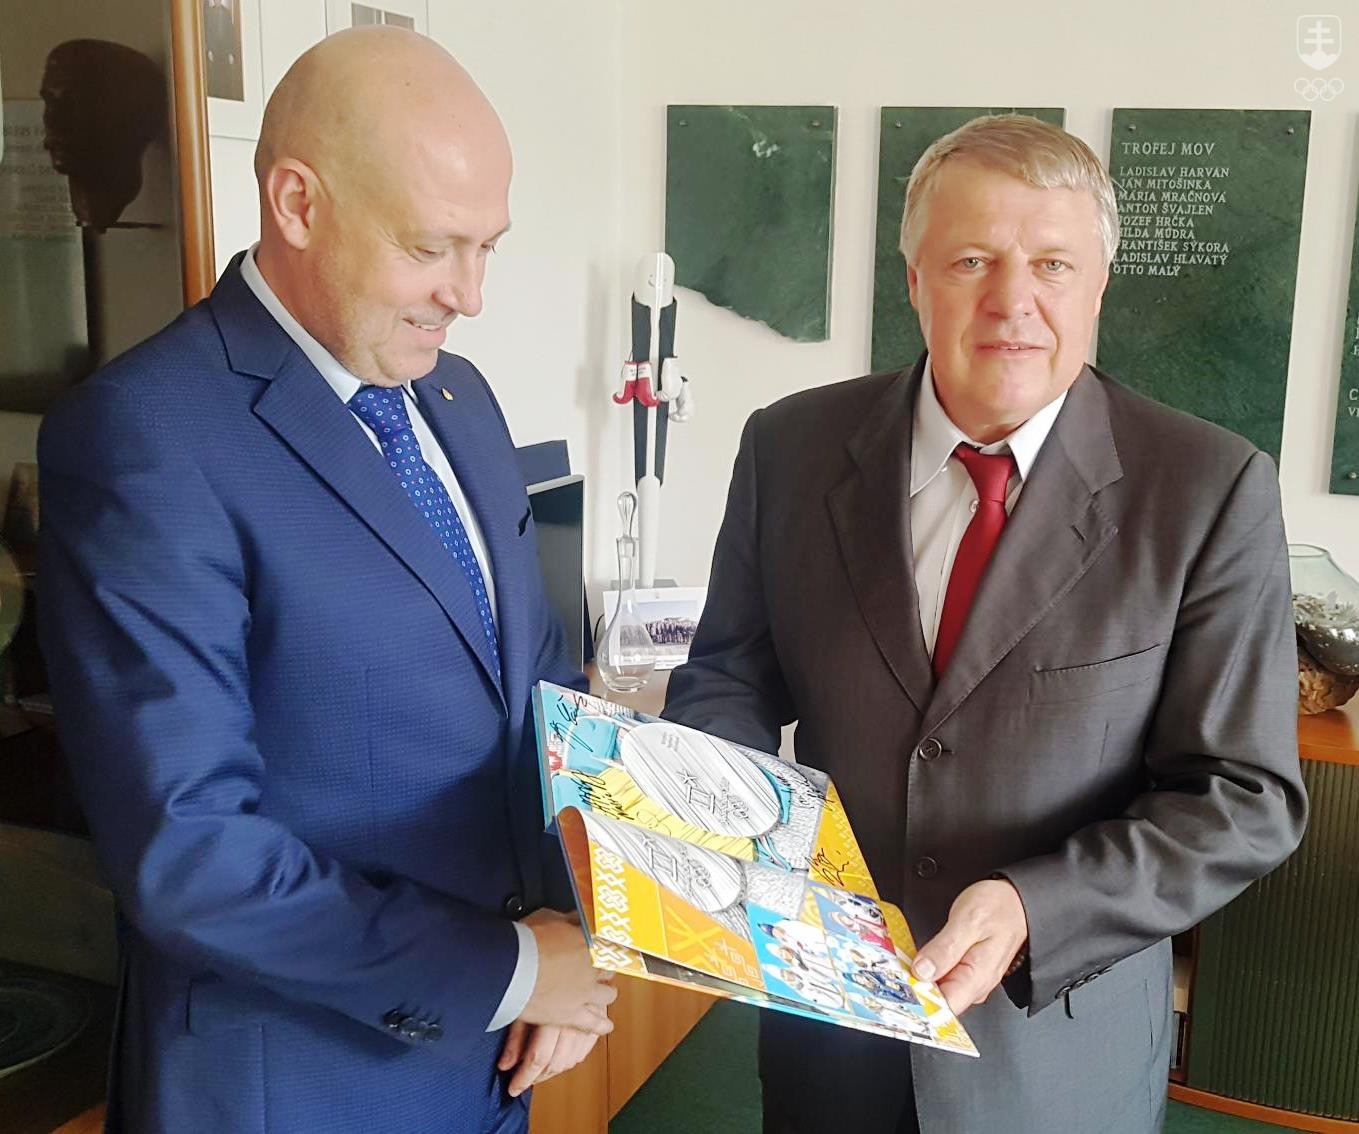 Veľvyslanec Milan Lajčiak sa potešil aj knihe PJONGČANG 2018, ktorá mu bude pripomínať tohtoročné ZOH. FOTO: SOV/ĽUBOMÍR SOUČEK